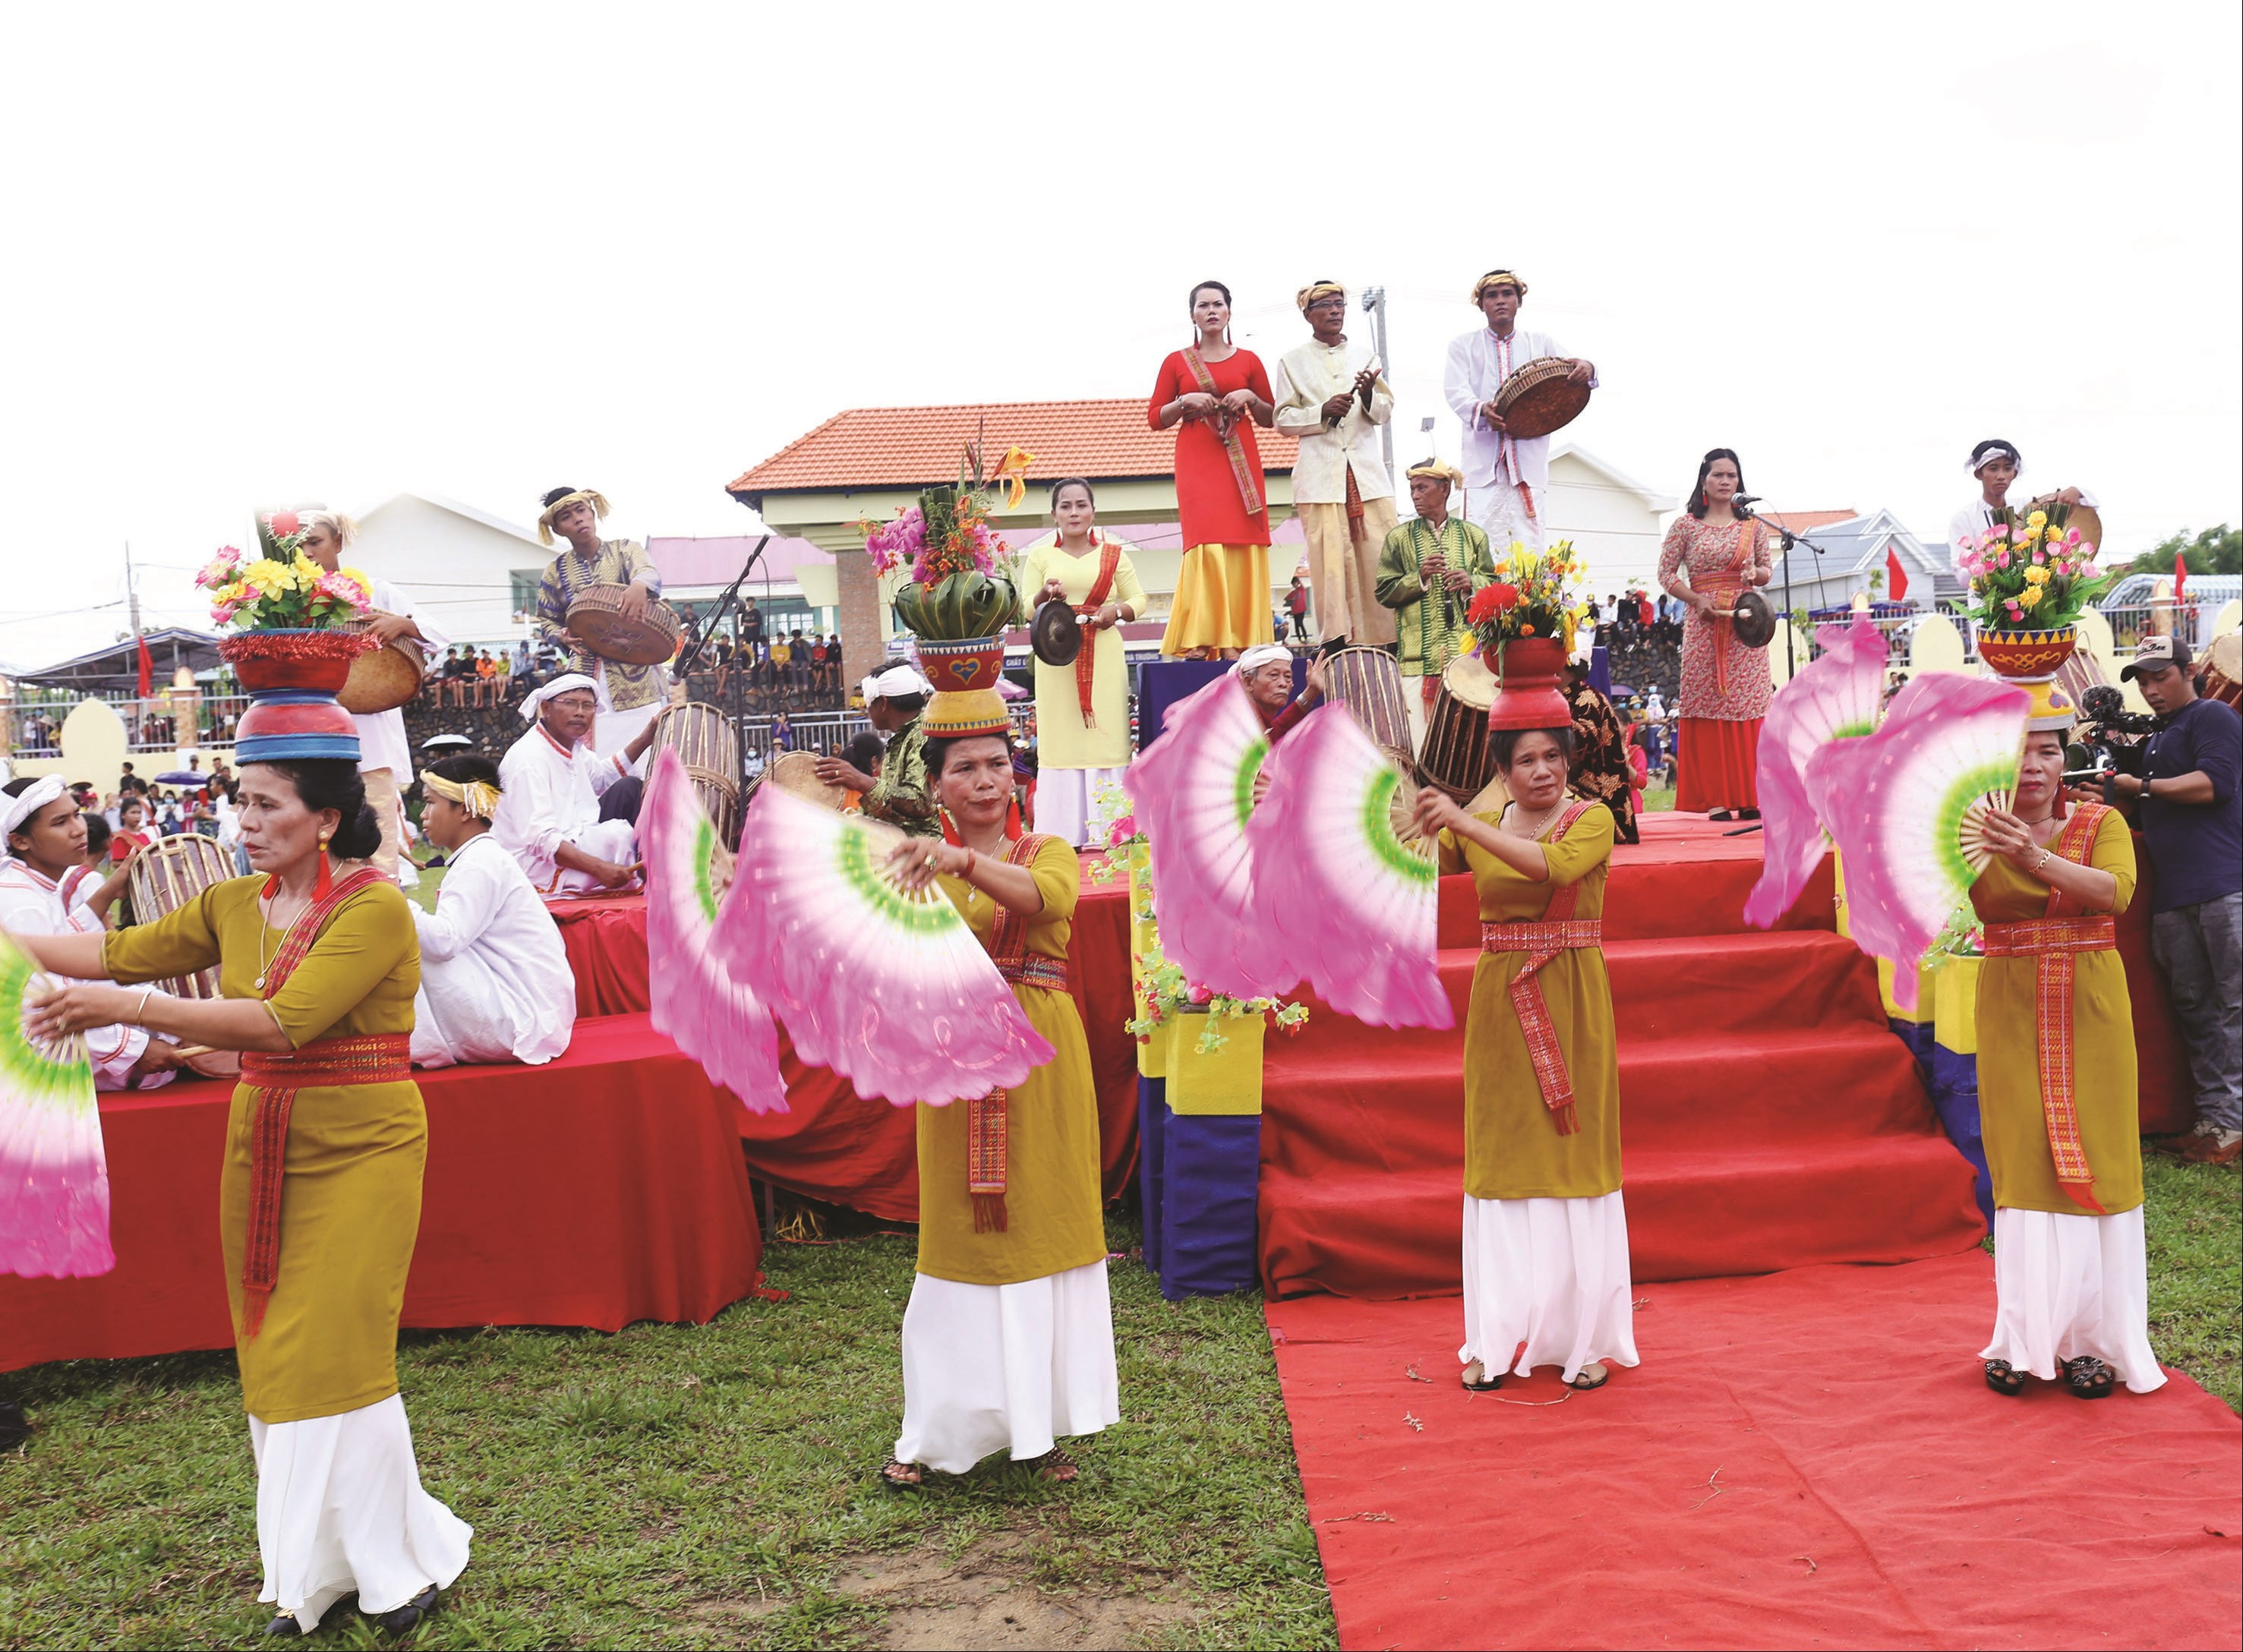 Âm thanh trống paranưng rộn rã trong ngày lễ hội truyền thống của đồng bào dân tộc Chăm.